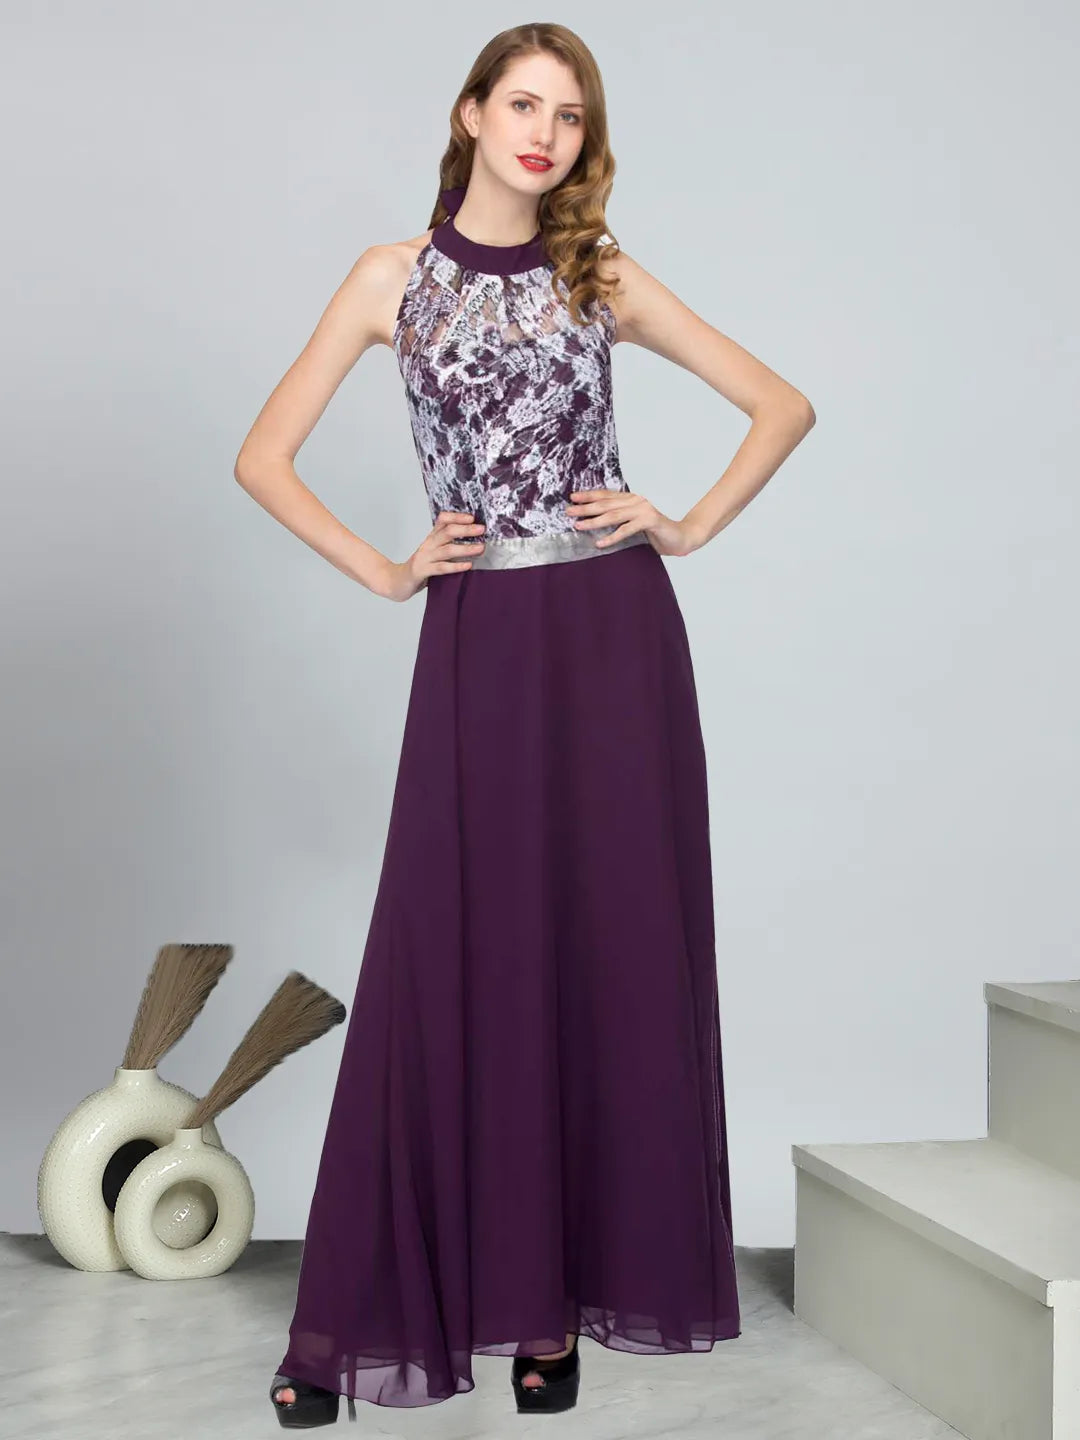 Dark Purple Lace Details Halter Neck Sleeveless Gown Dress